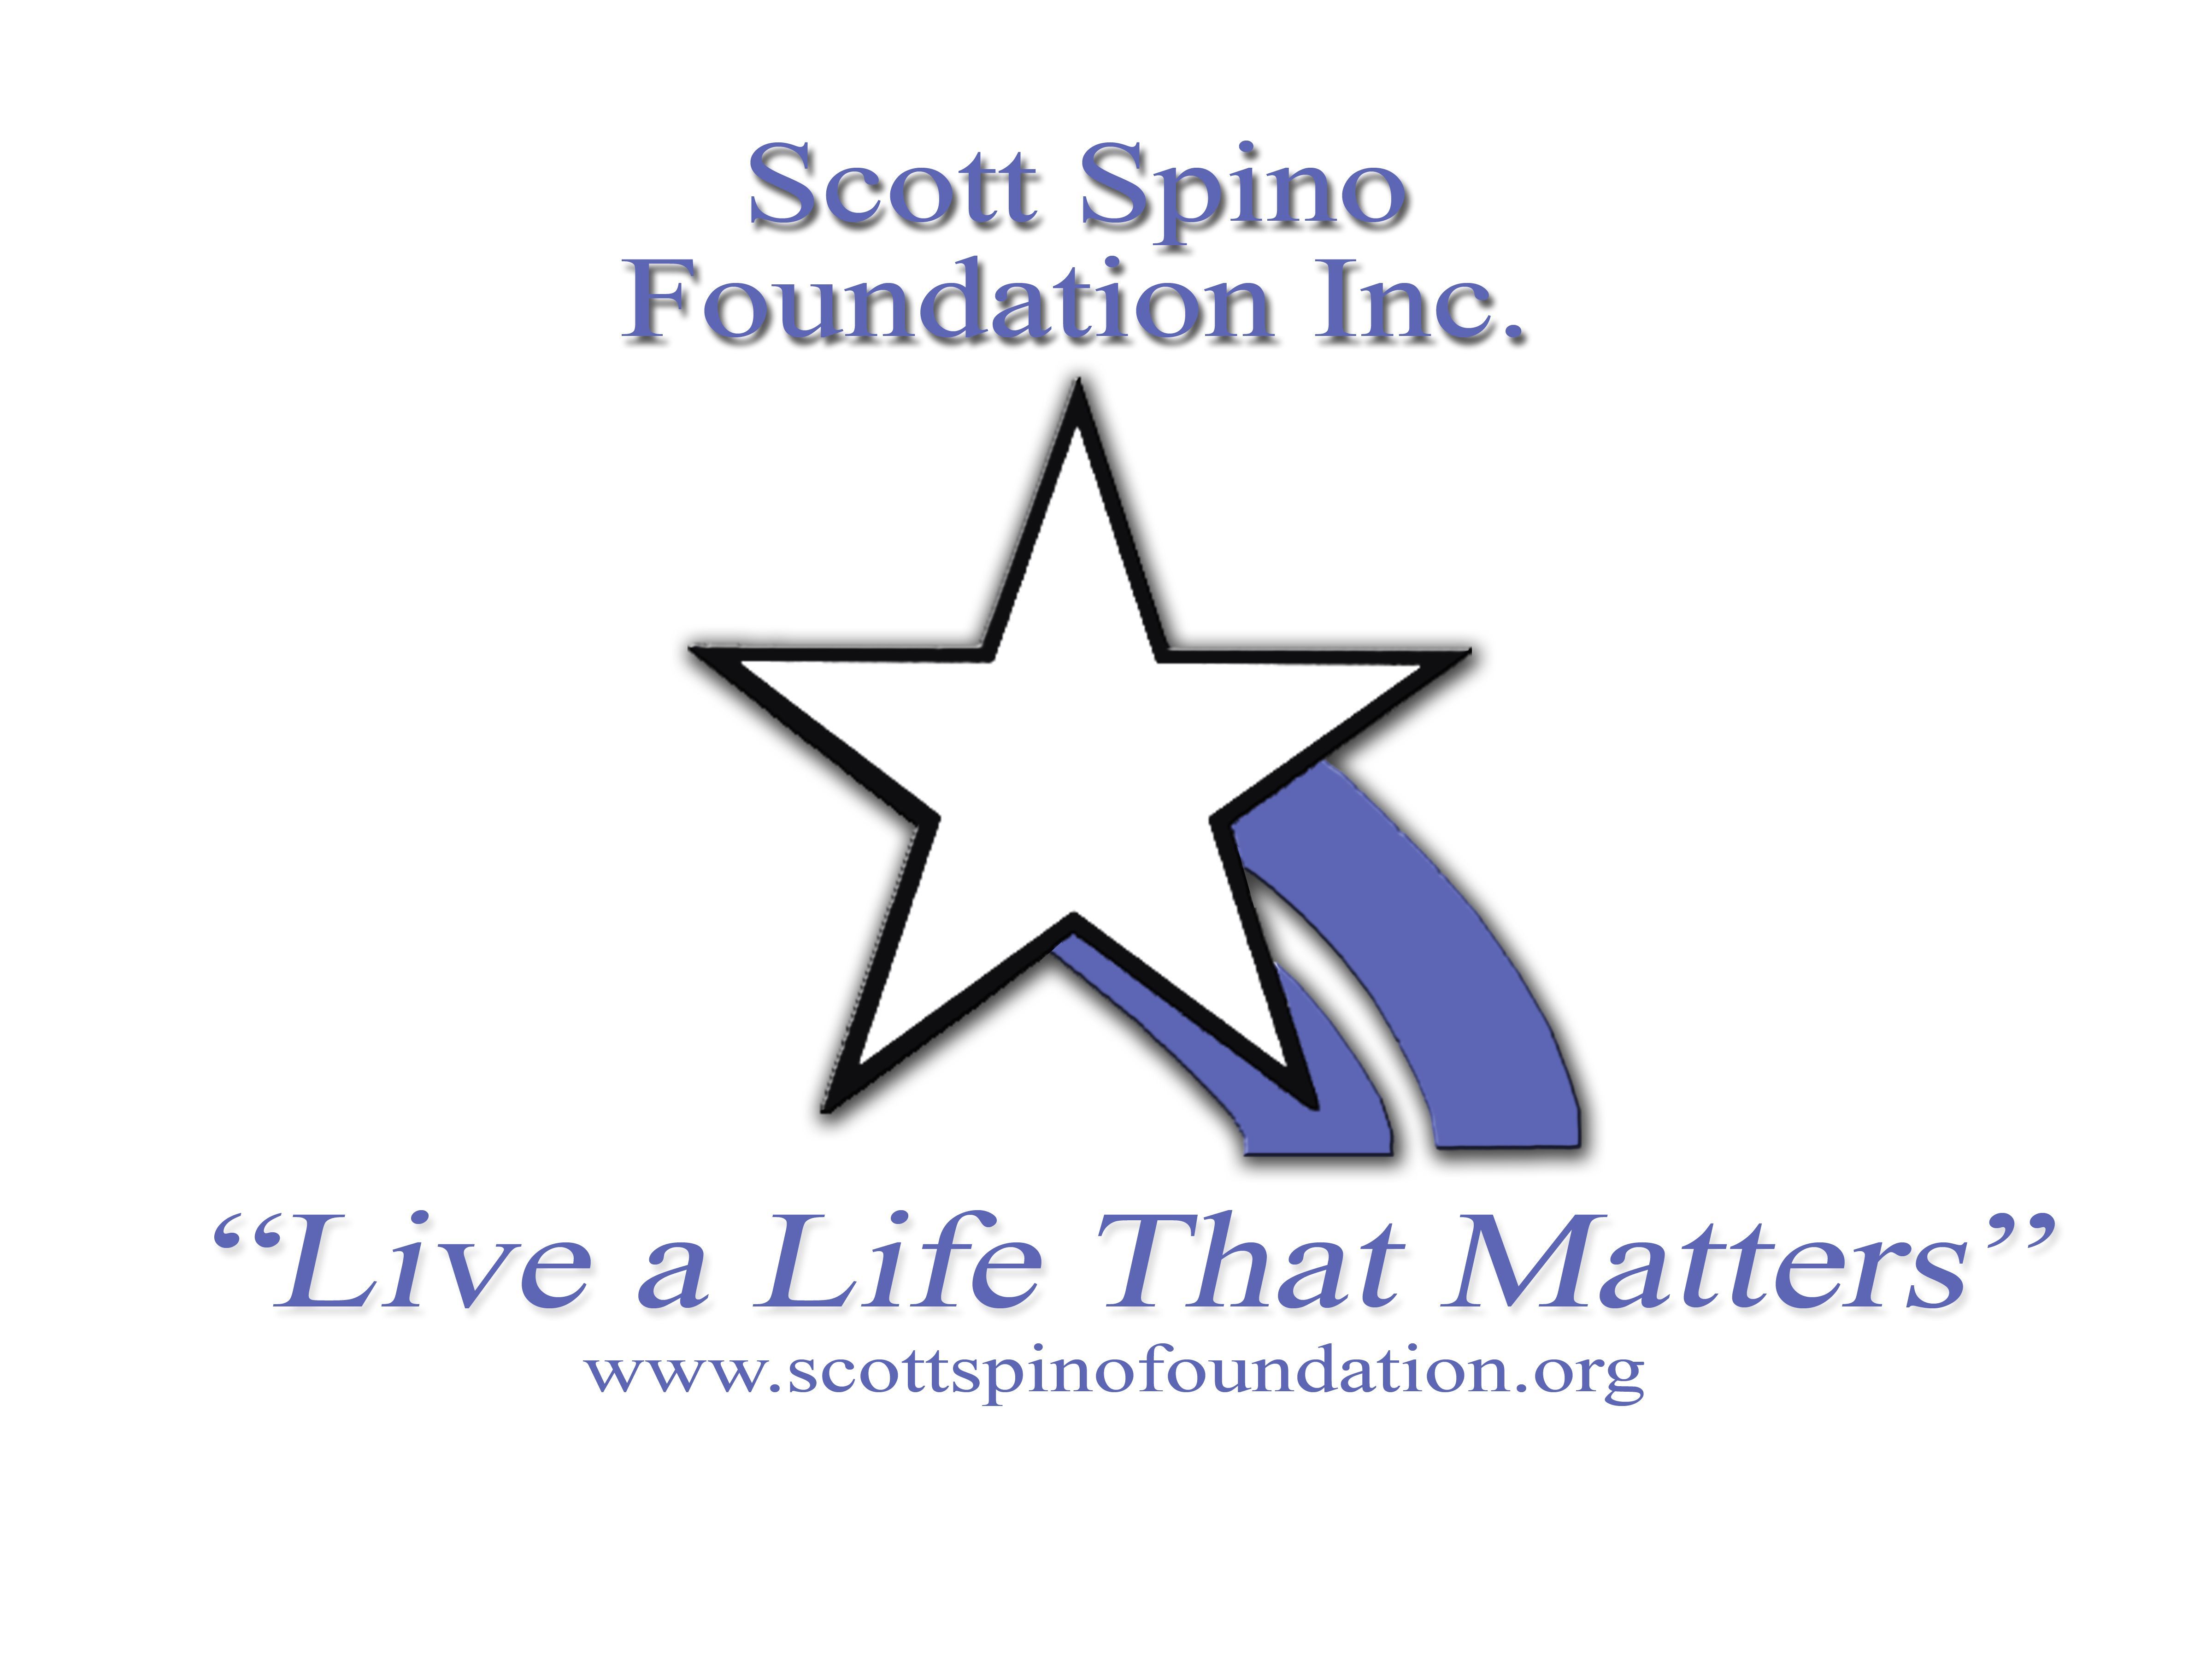 Scott Spino Foundation